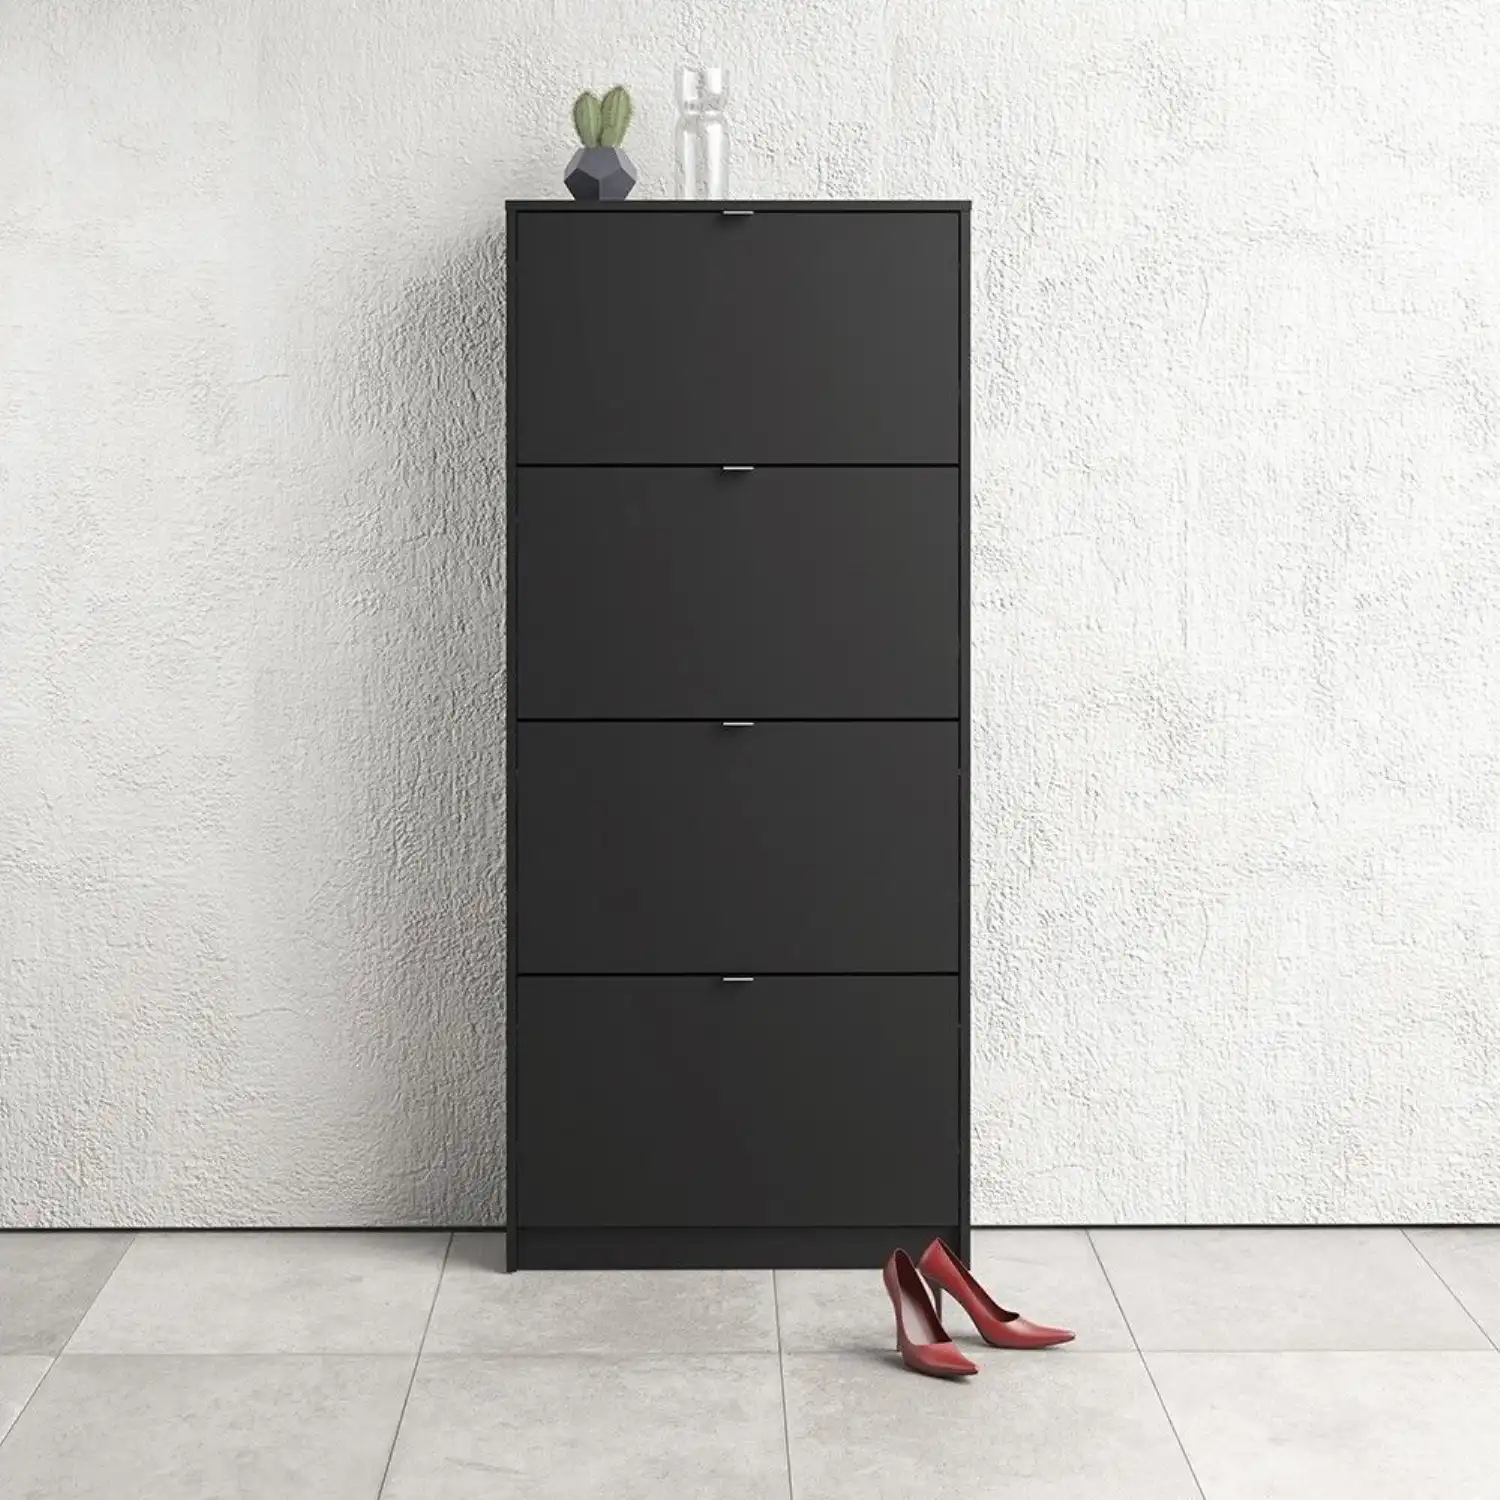 Matt Black Shoe Storage Cabinet Cupboard With 4 Tilting Doors